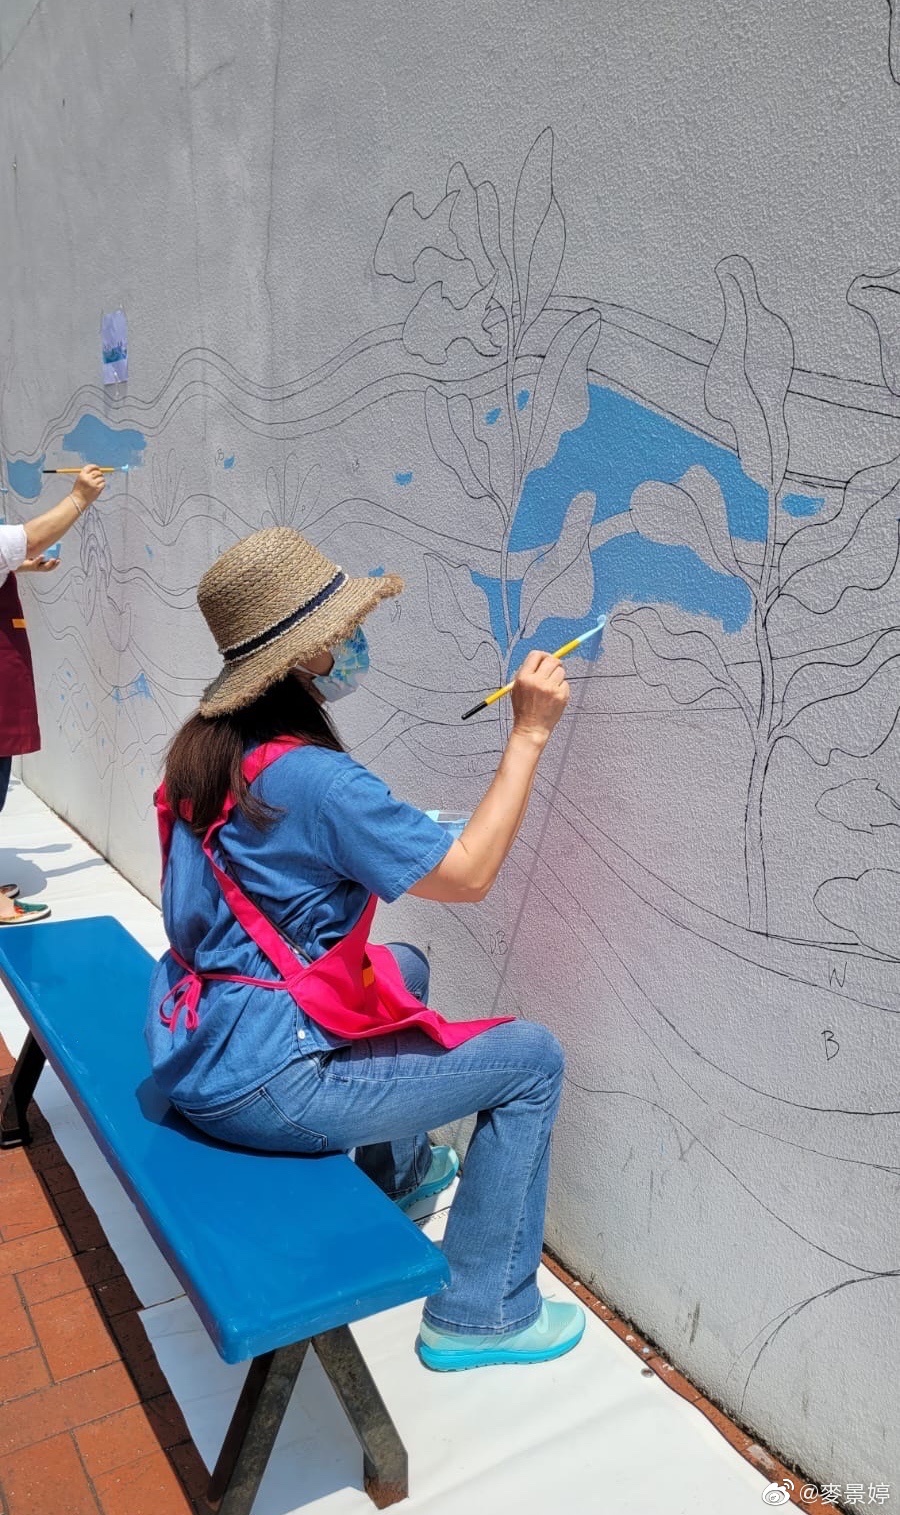 麥景婷近年經常參與街頭繪畫壁畫。